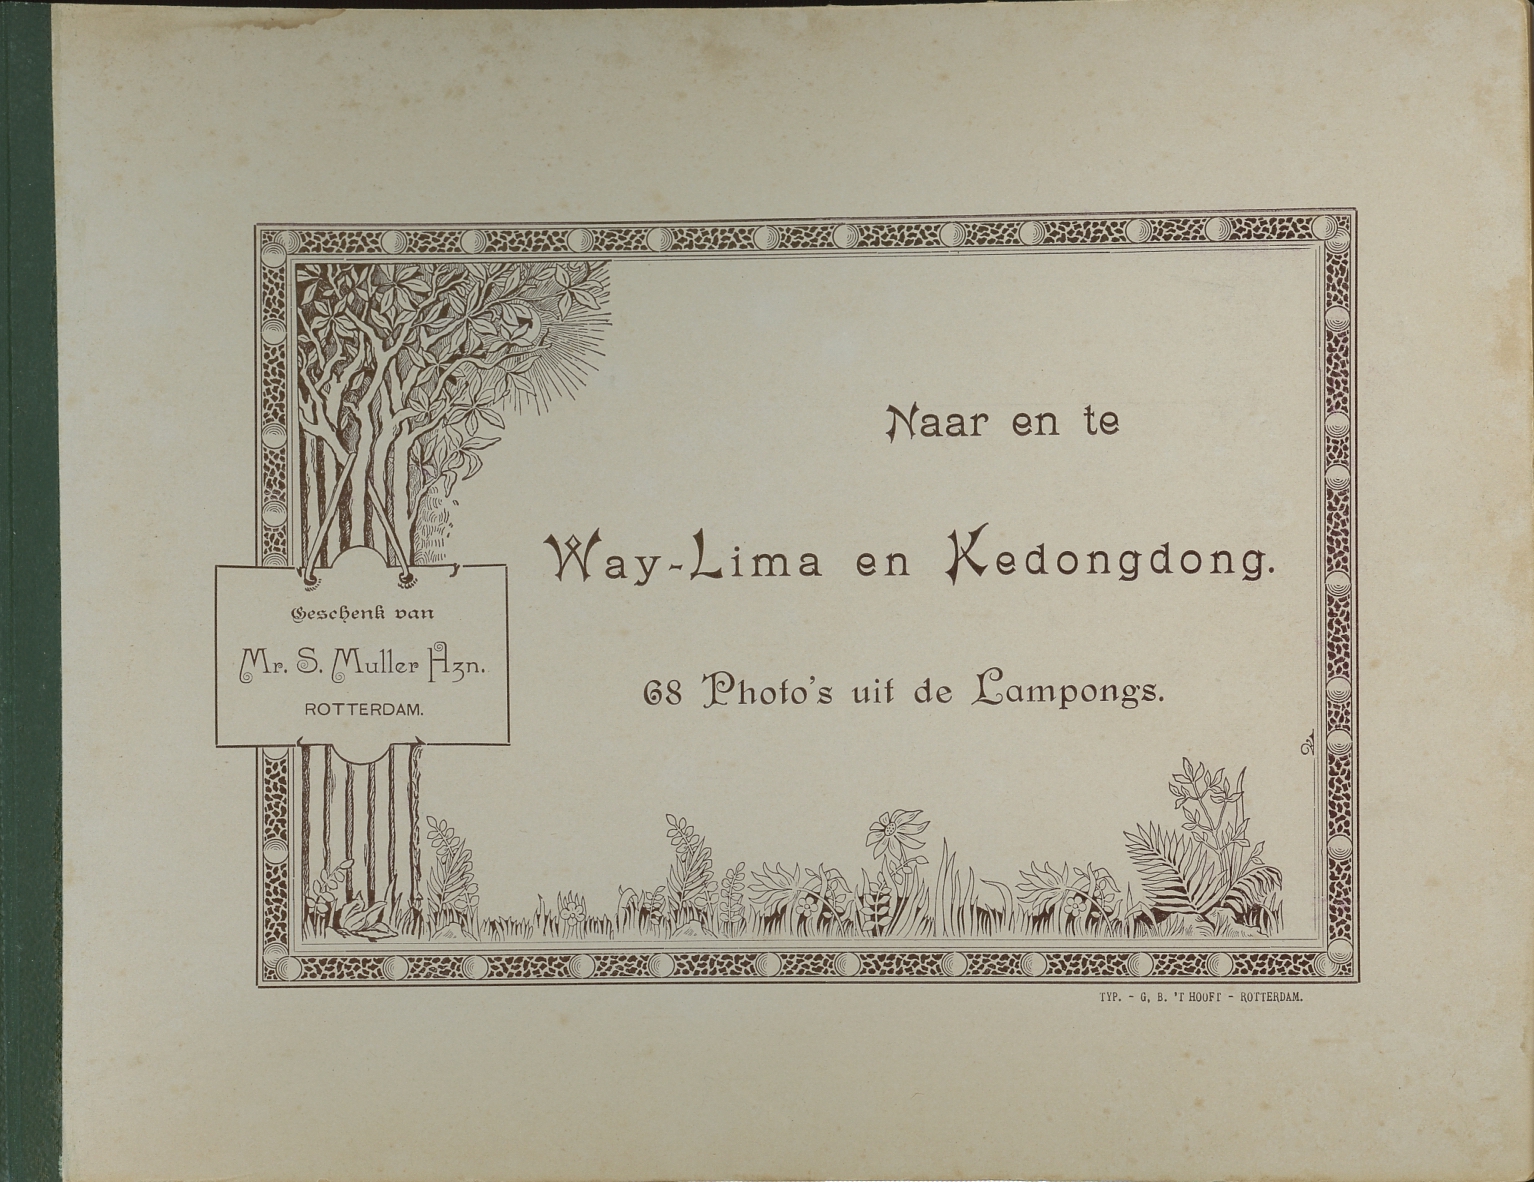 Naar en te Way-Lima en Kedongdong - 68 photo's uit de Kampongs. 1898. S. Muller Hzn (1852-1915). Rotterdam